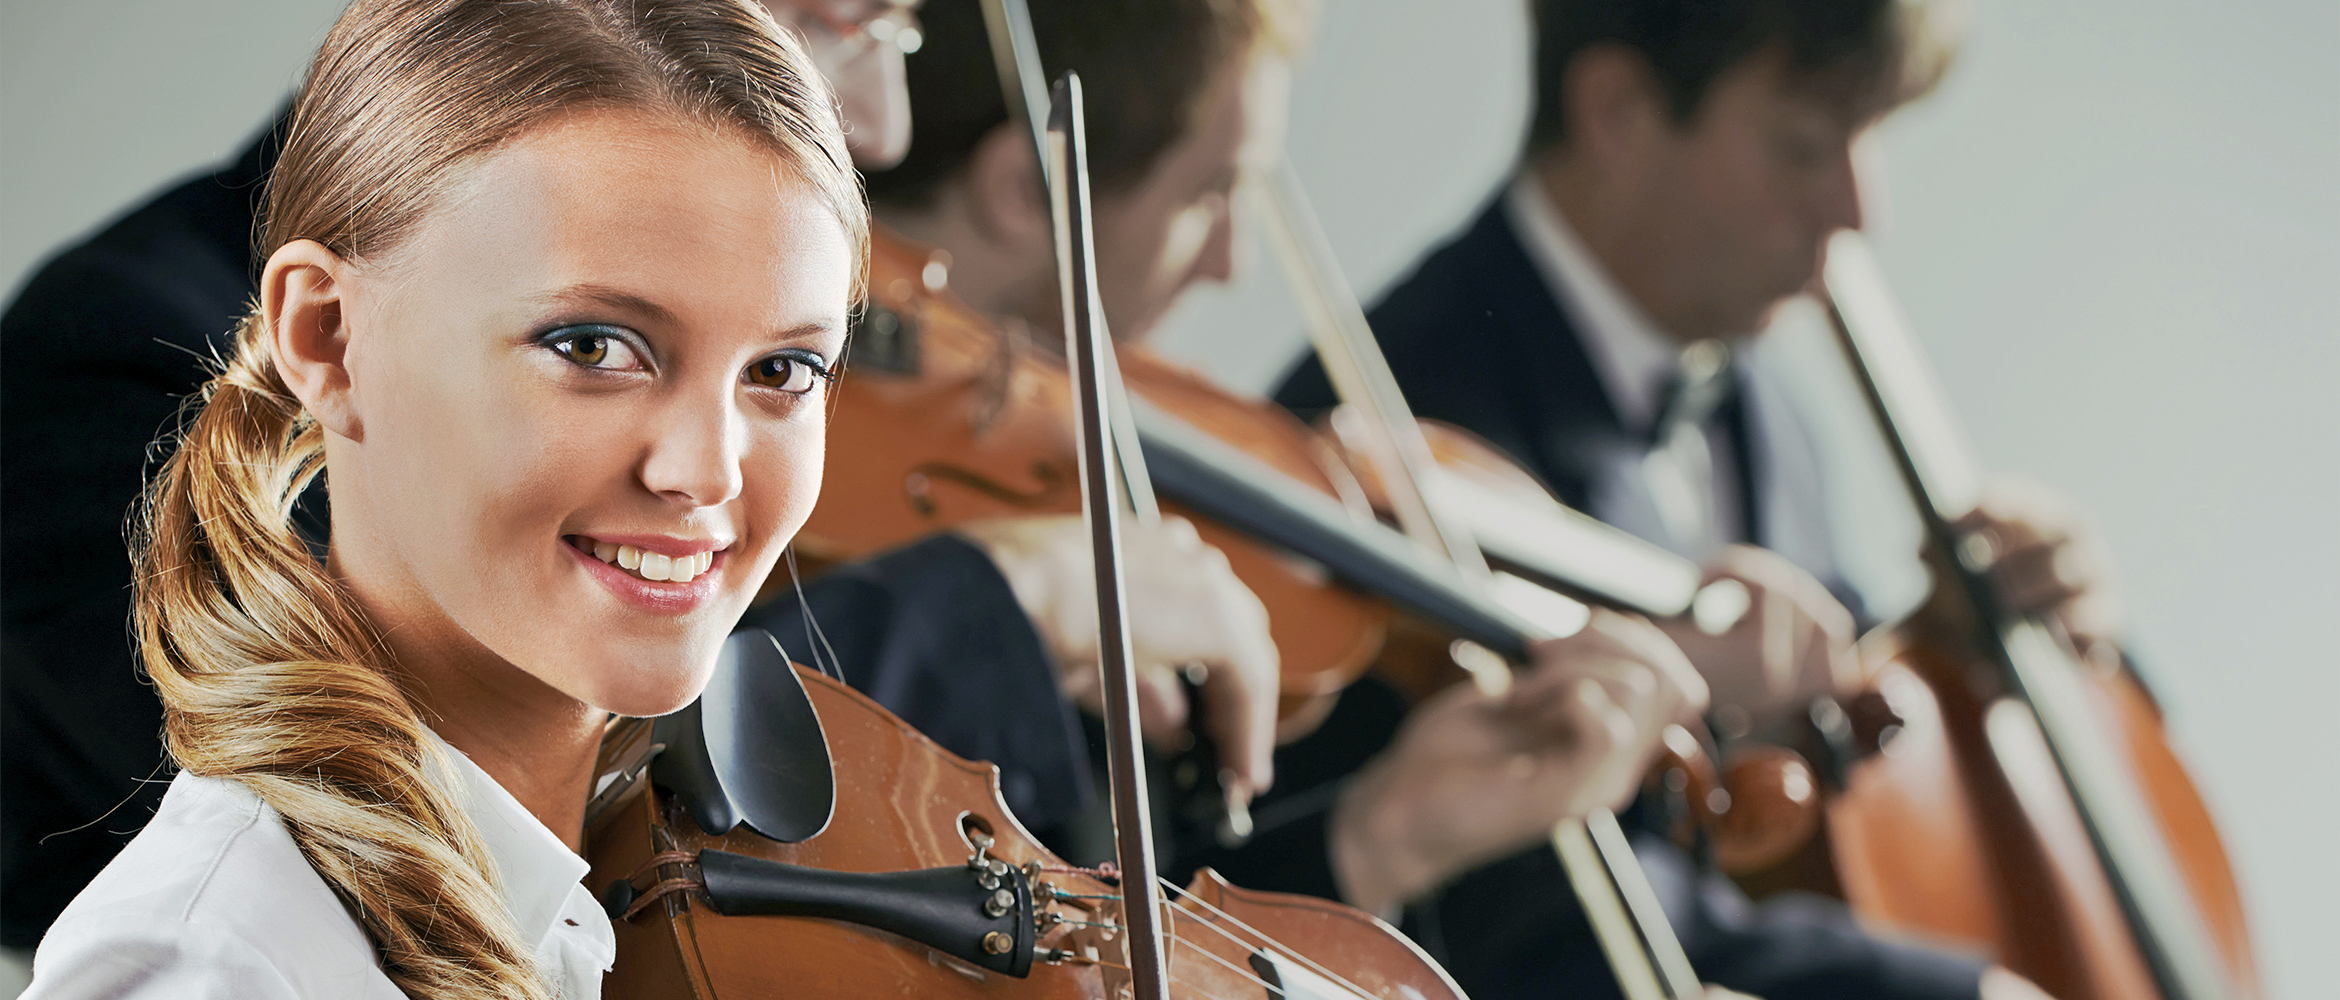 Eine junge Frau mit zurückgebundenen Haaren spielt lächelnd eine Violine, im Hintergrund verschwommen weitere Geiger, was eine musikalische Ensemble-Performance suggeriert.